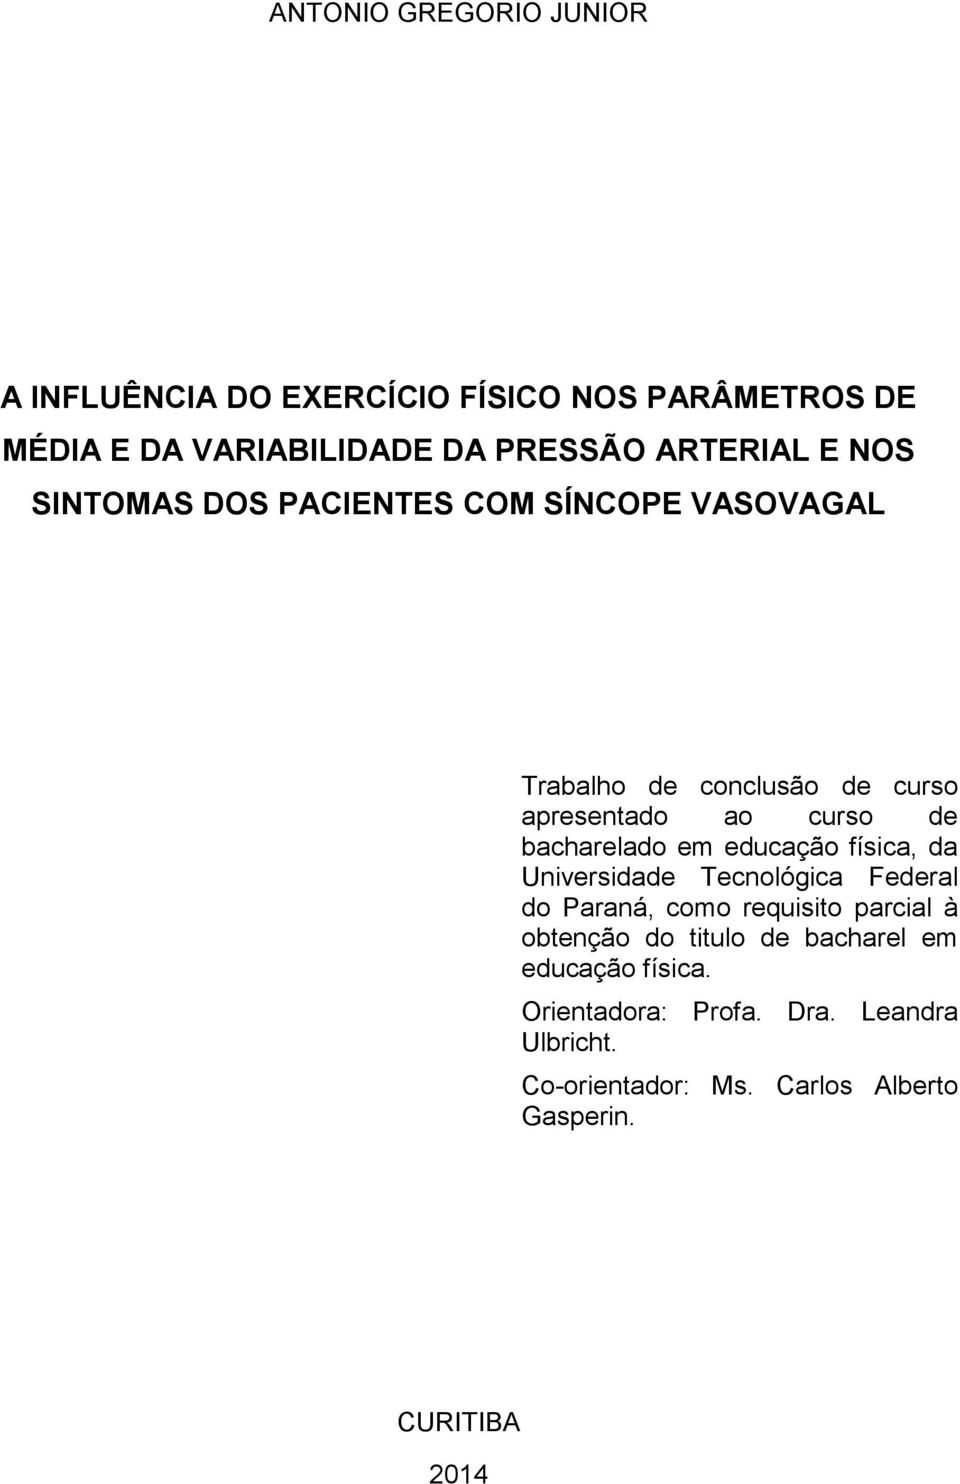 educação física, da Universidade Tecnológica Federal do Paraná, como requisito parcial à obtenção do titulo de bacharel